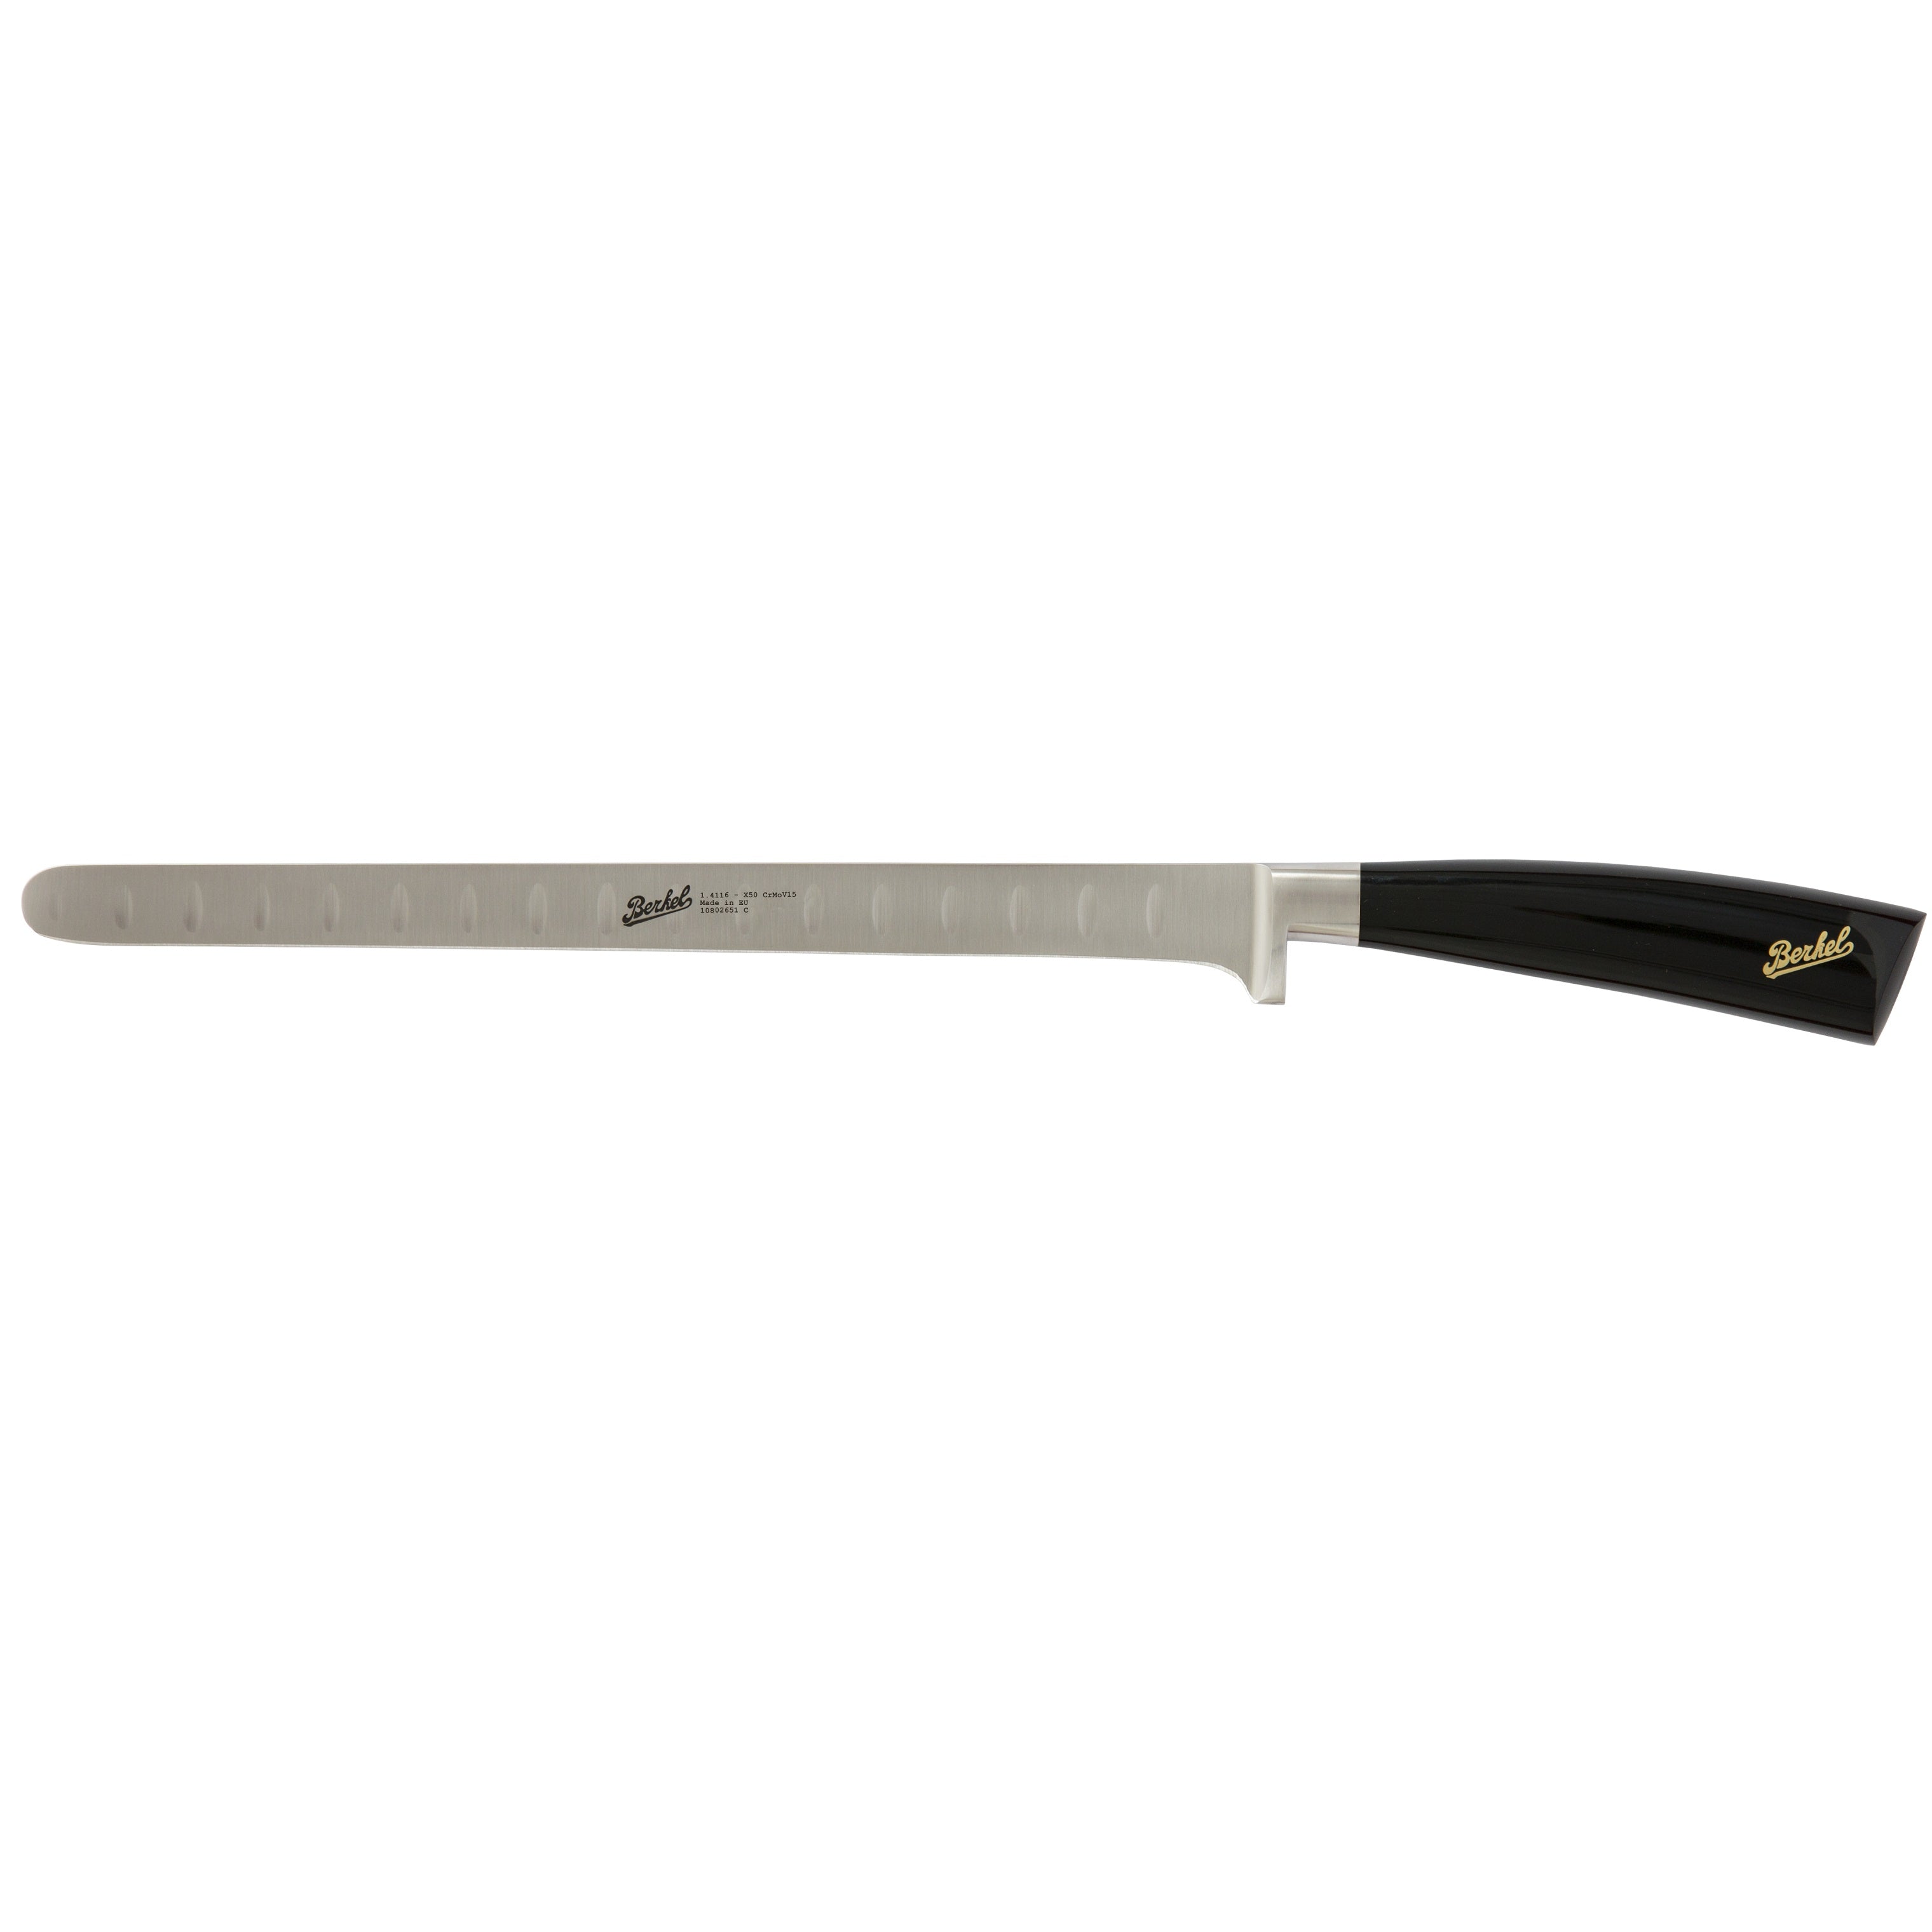 Berkel Elegance Salmon knife cm 26 Steel Handle